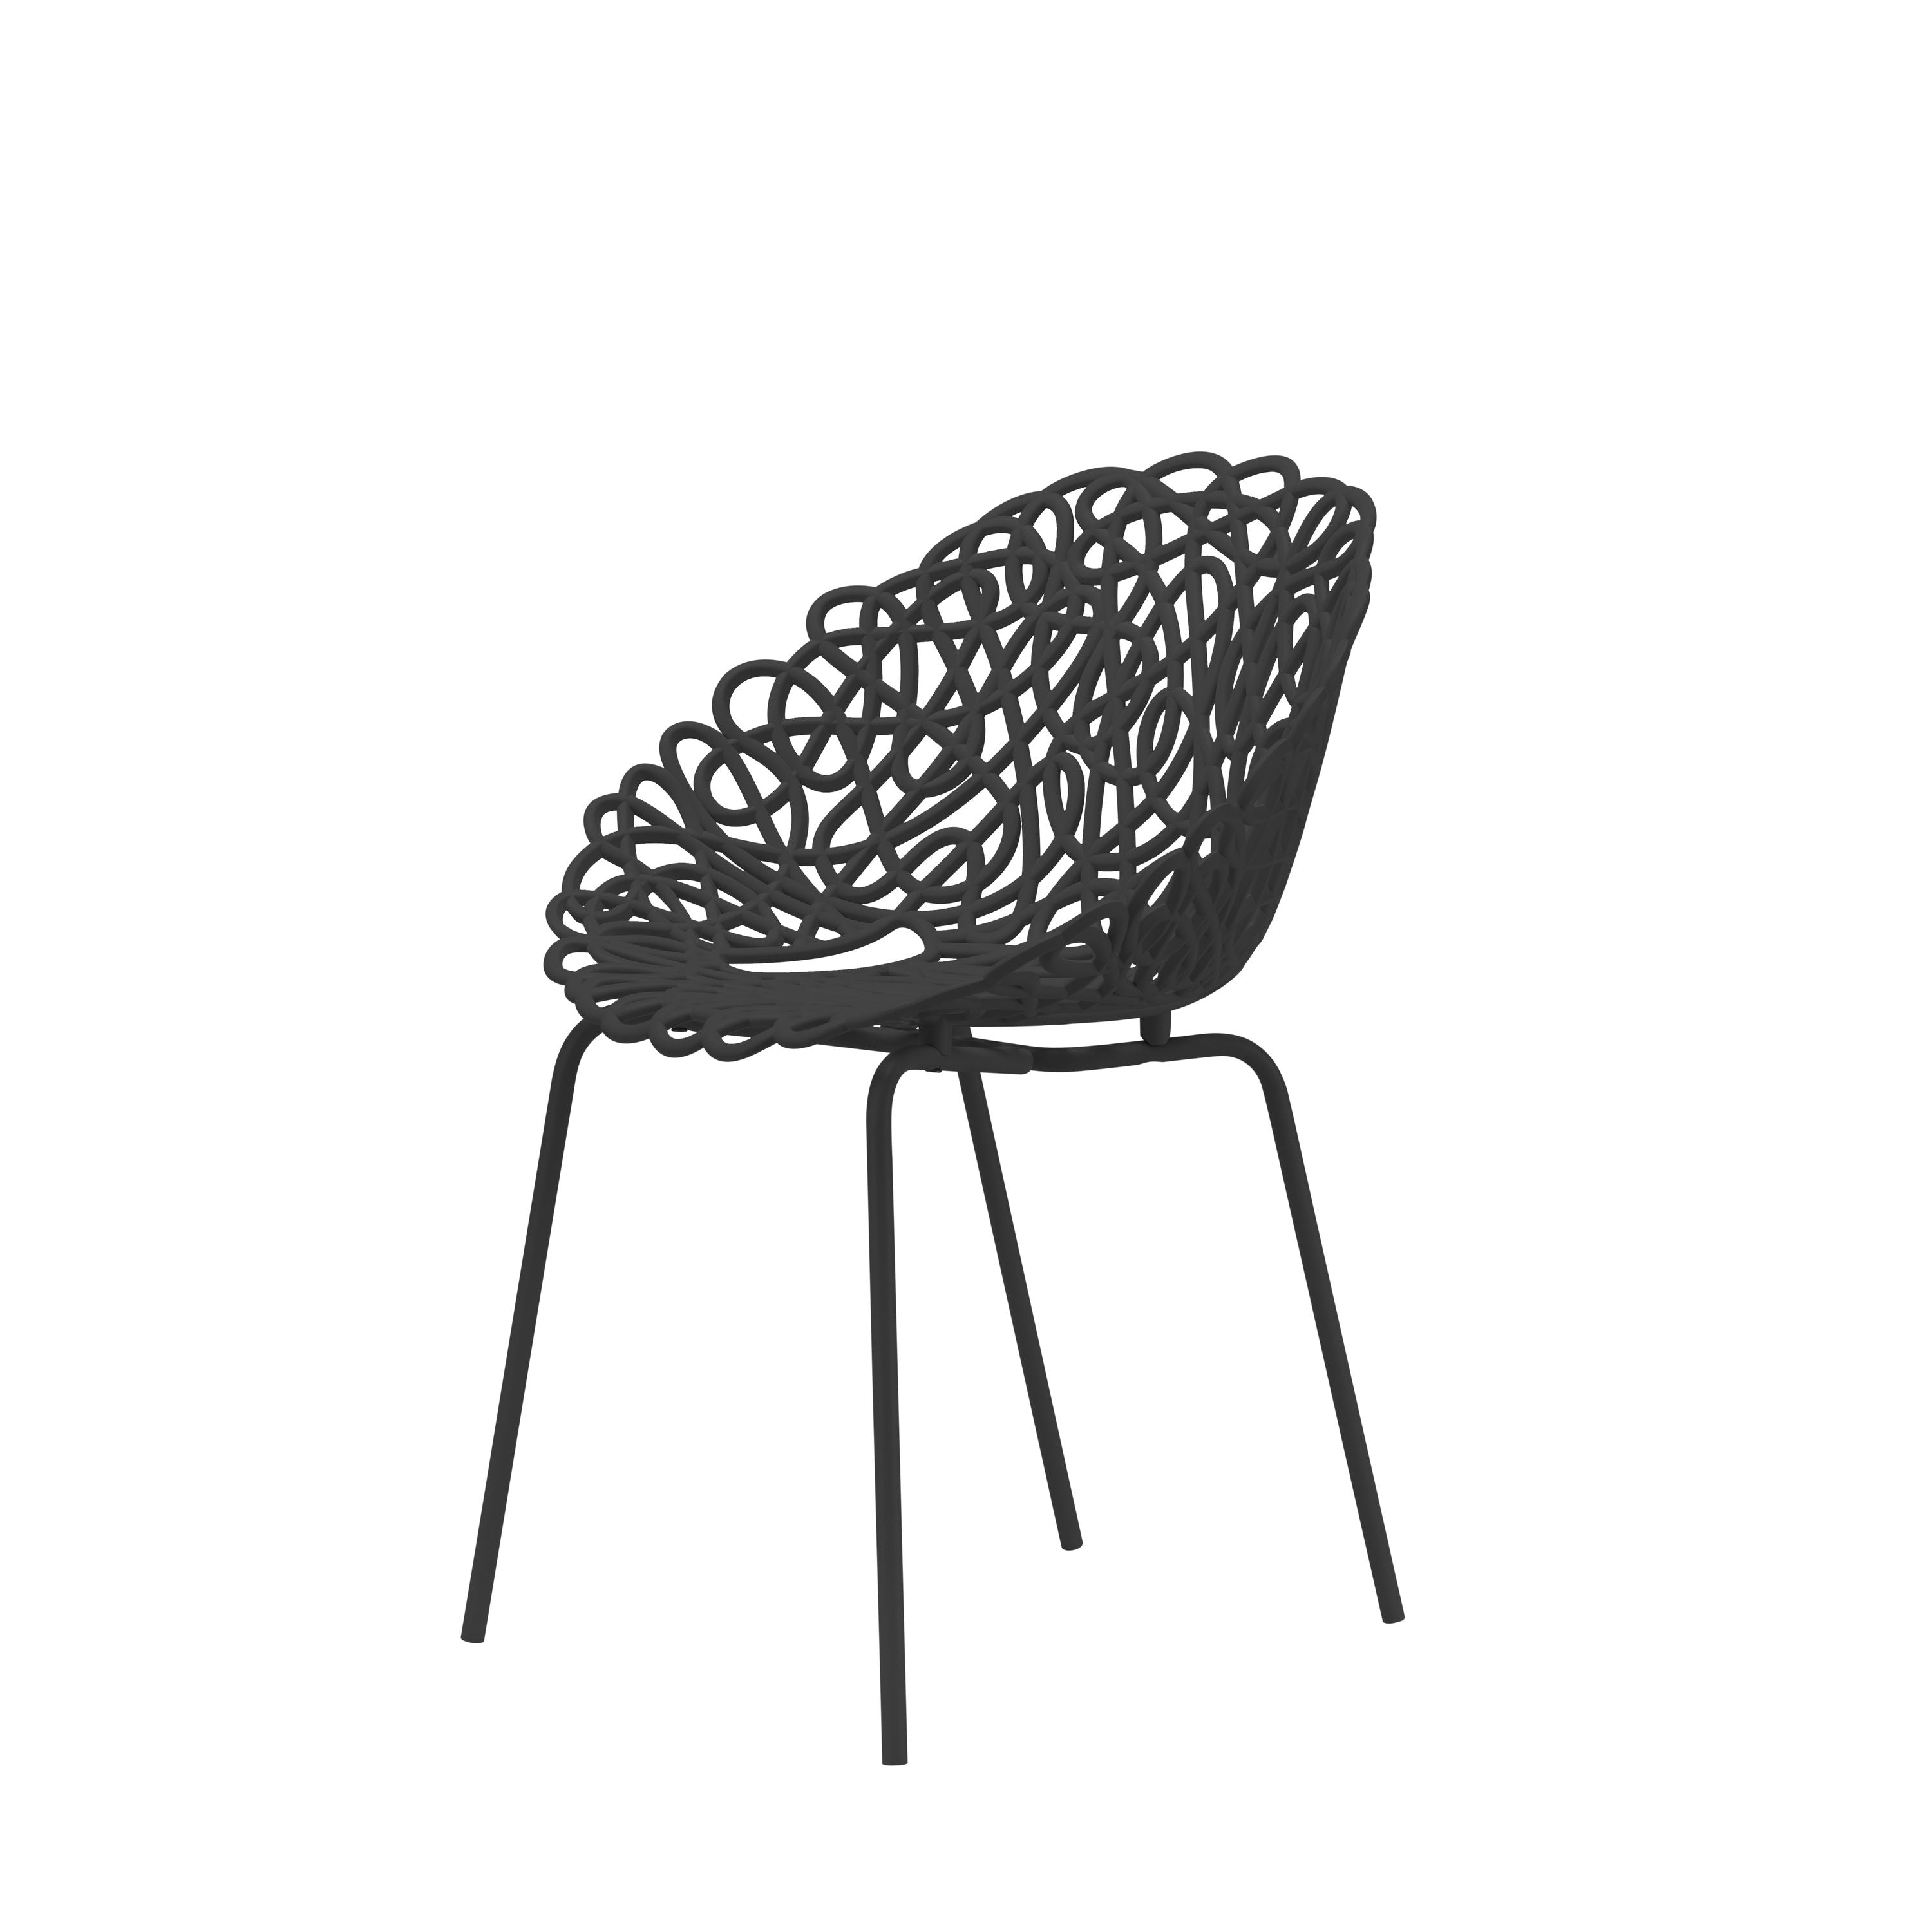 Qeeboo Bacana Chair Indoor Set Of 2 Pcs, Black